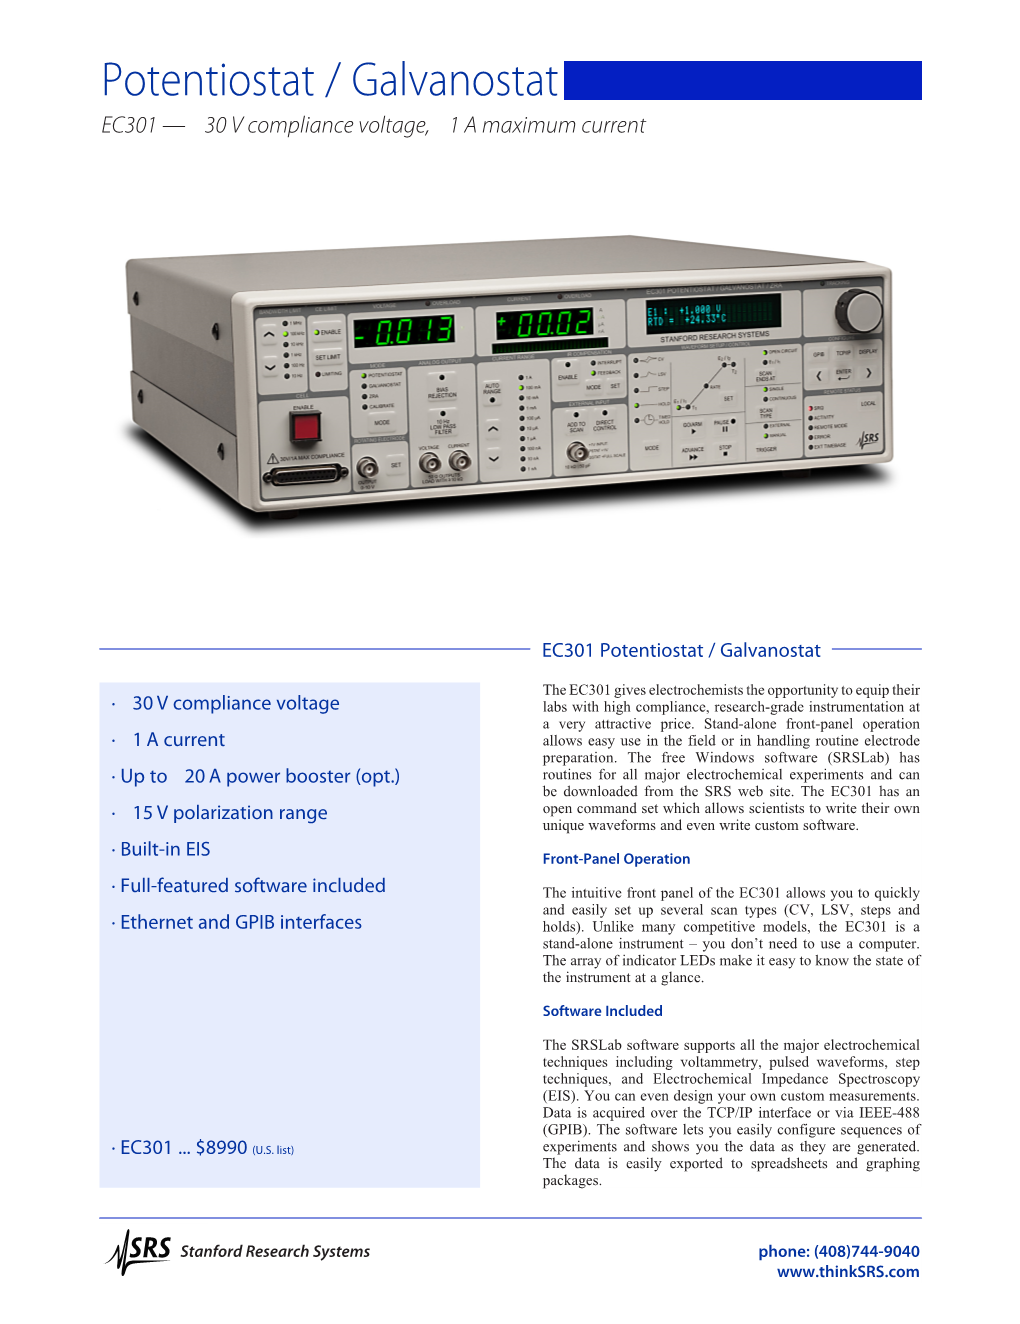 Potentiostat / Galvanostat EC301 — ±30 V Compliance Voltage, ±1 a Maximum Current